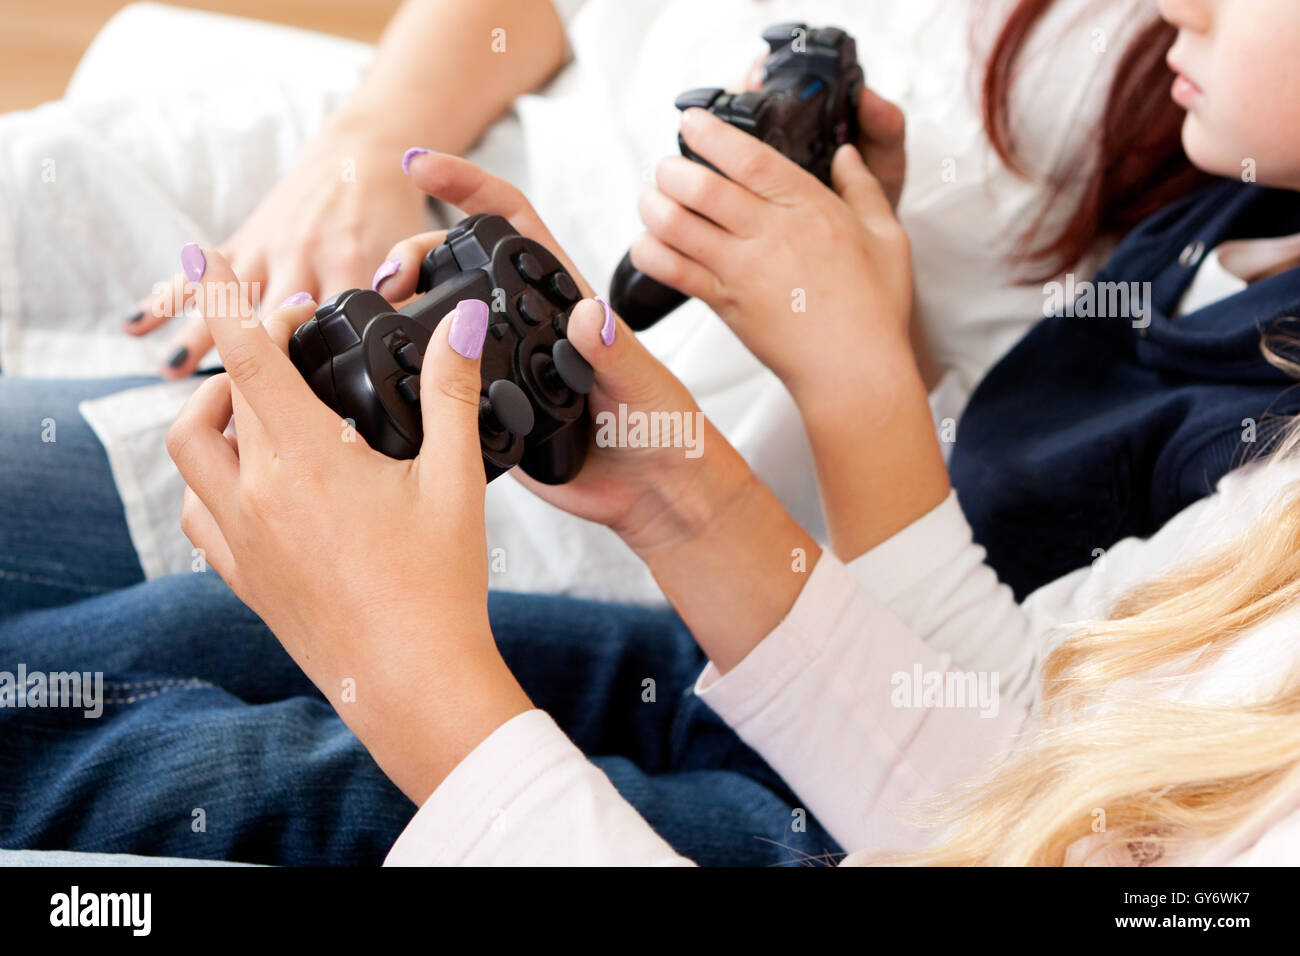 Niños jugando juegos de consola con joystick Foto de stock